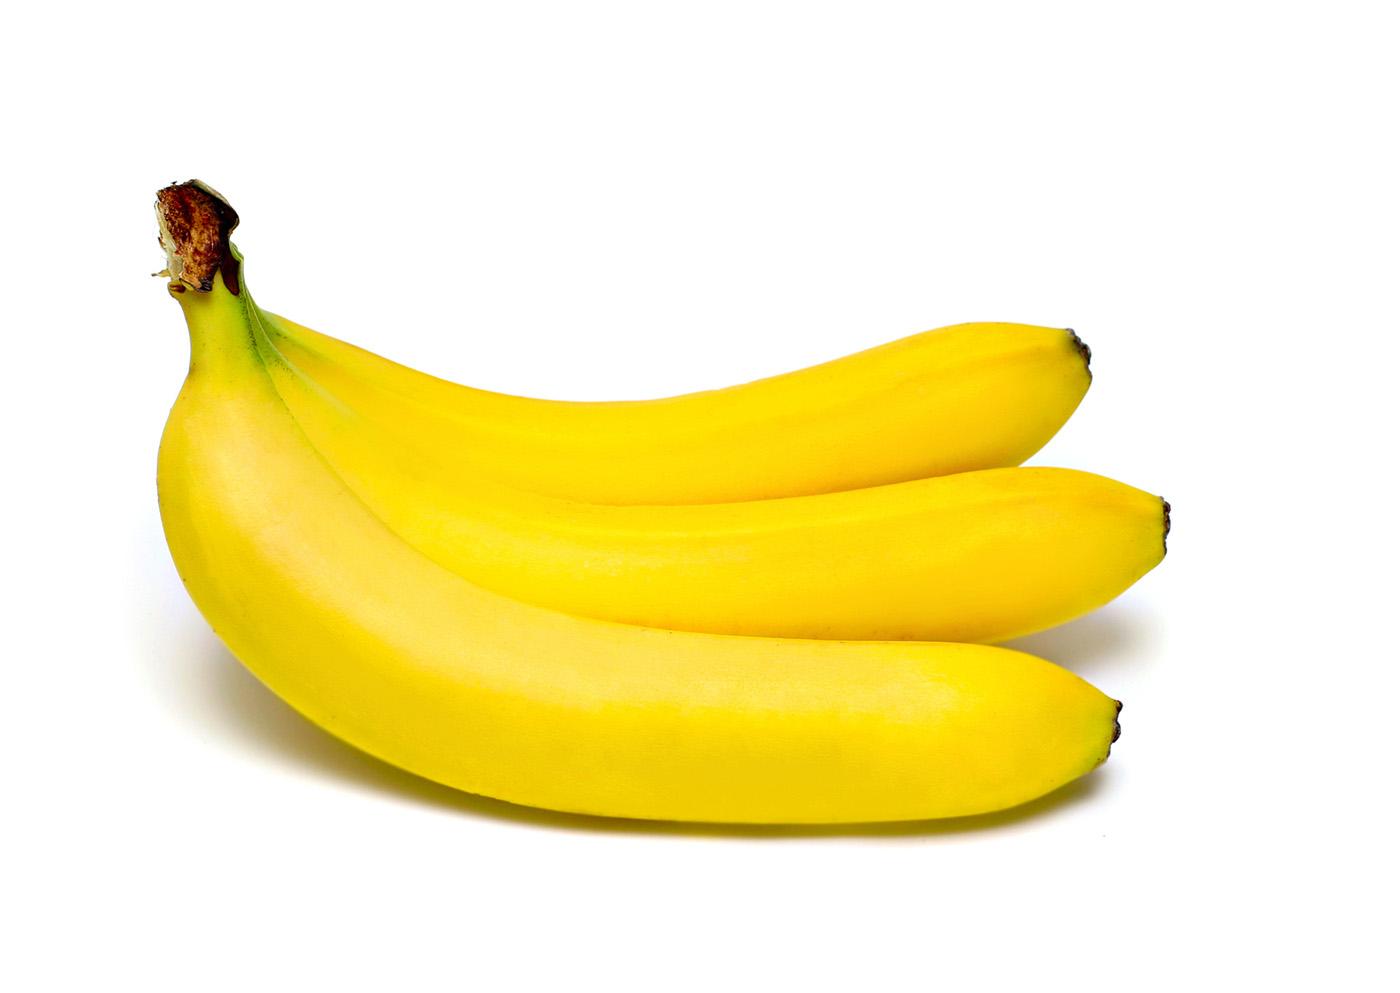 泰国香蕉进口报关流程